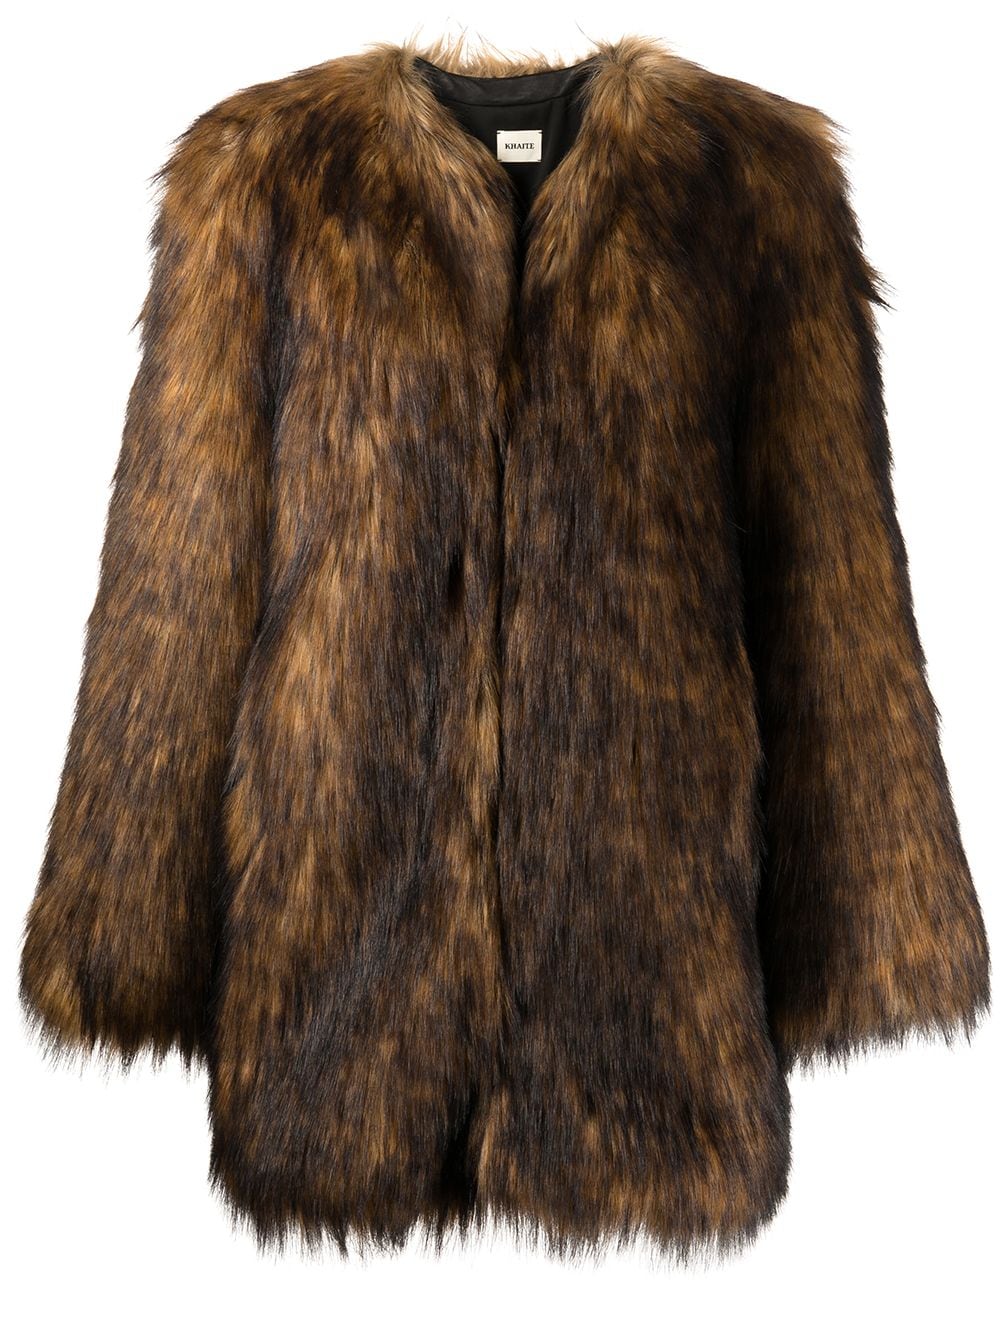 The Remy faux-fur coat